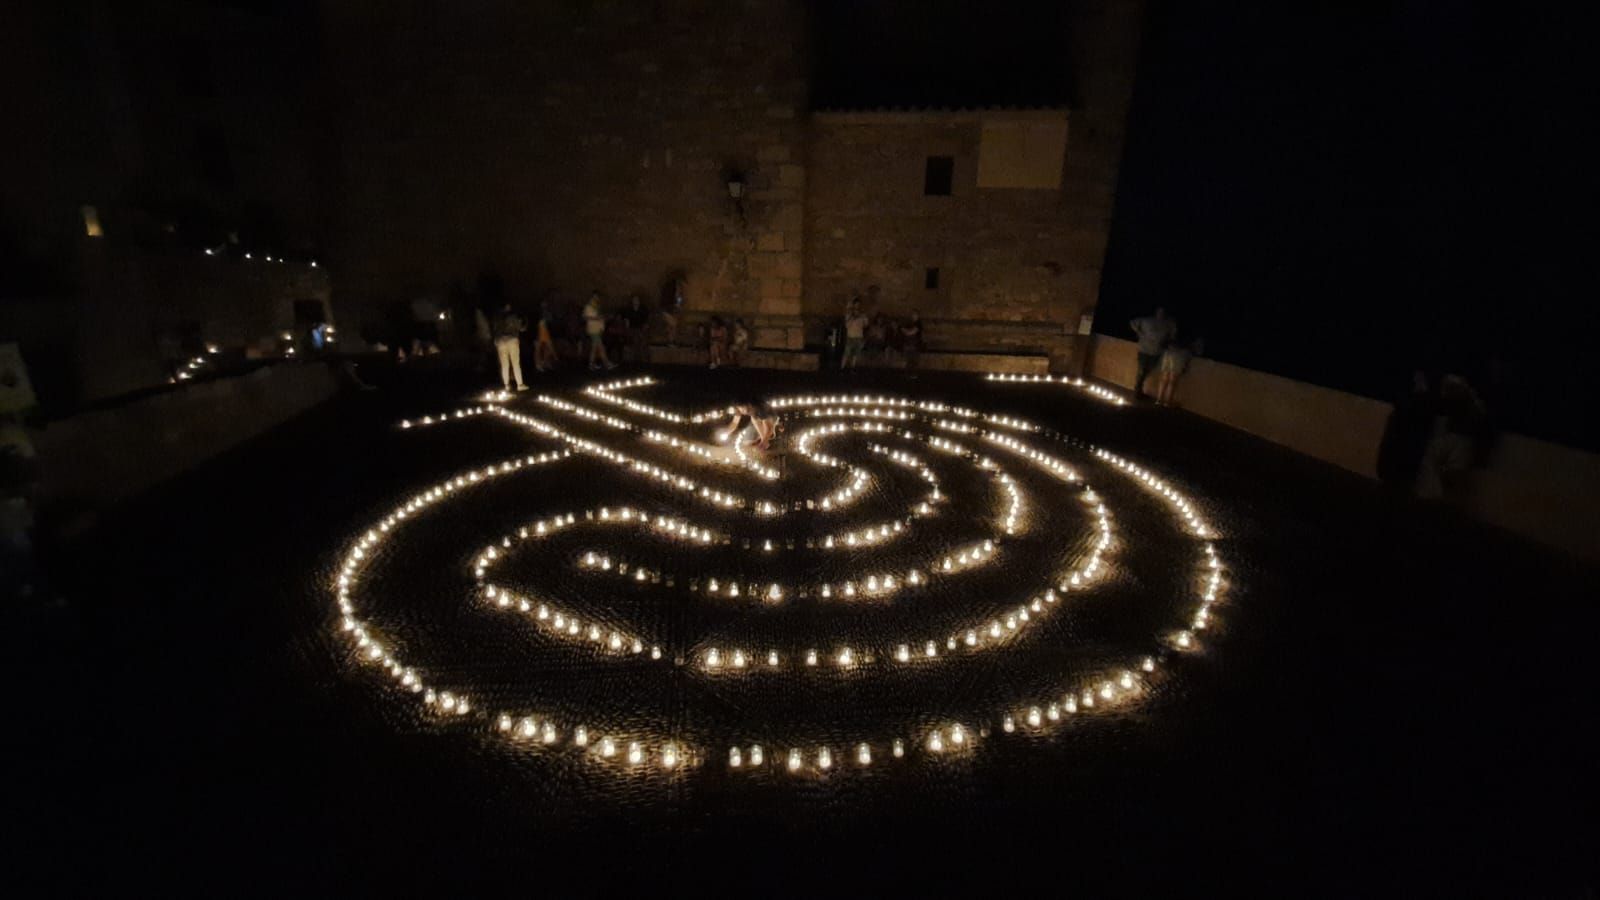 Culla ilumina su casco histórico con 5.500 velas